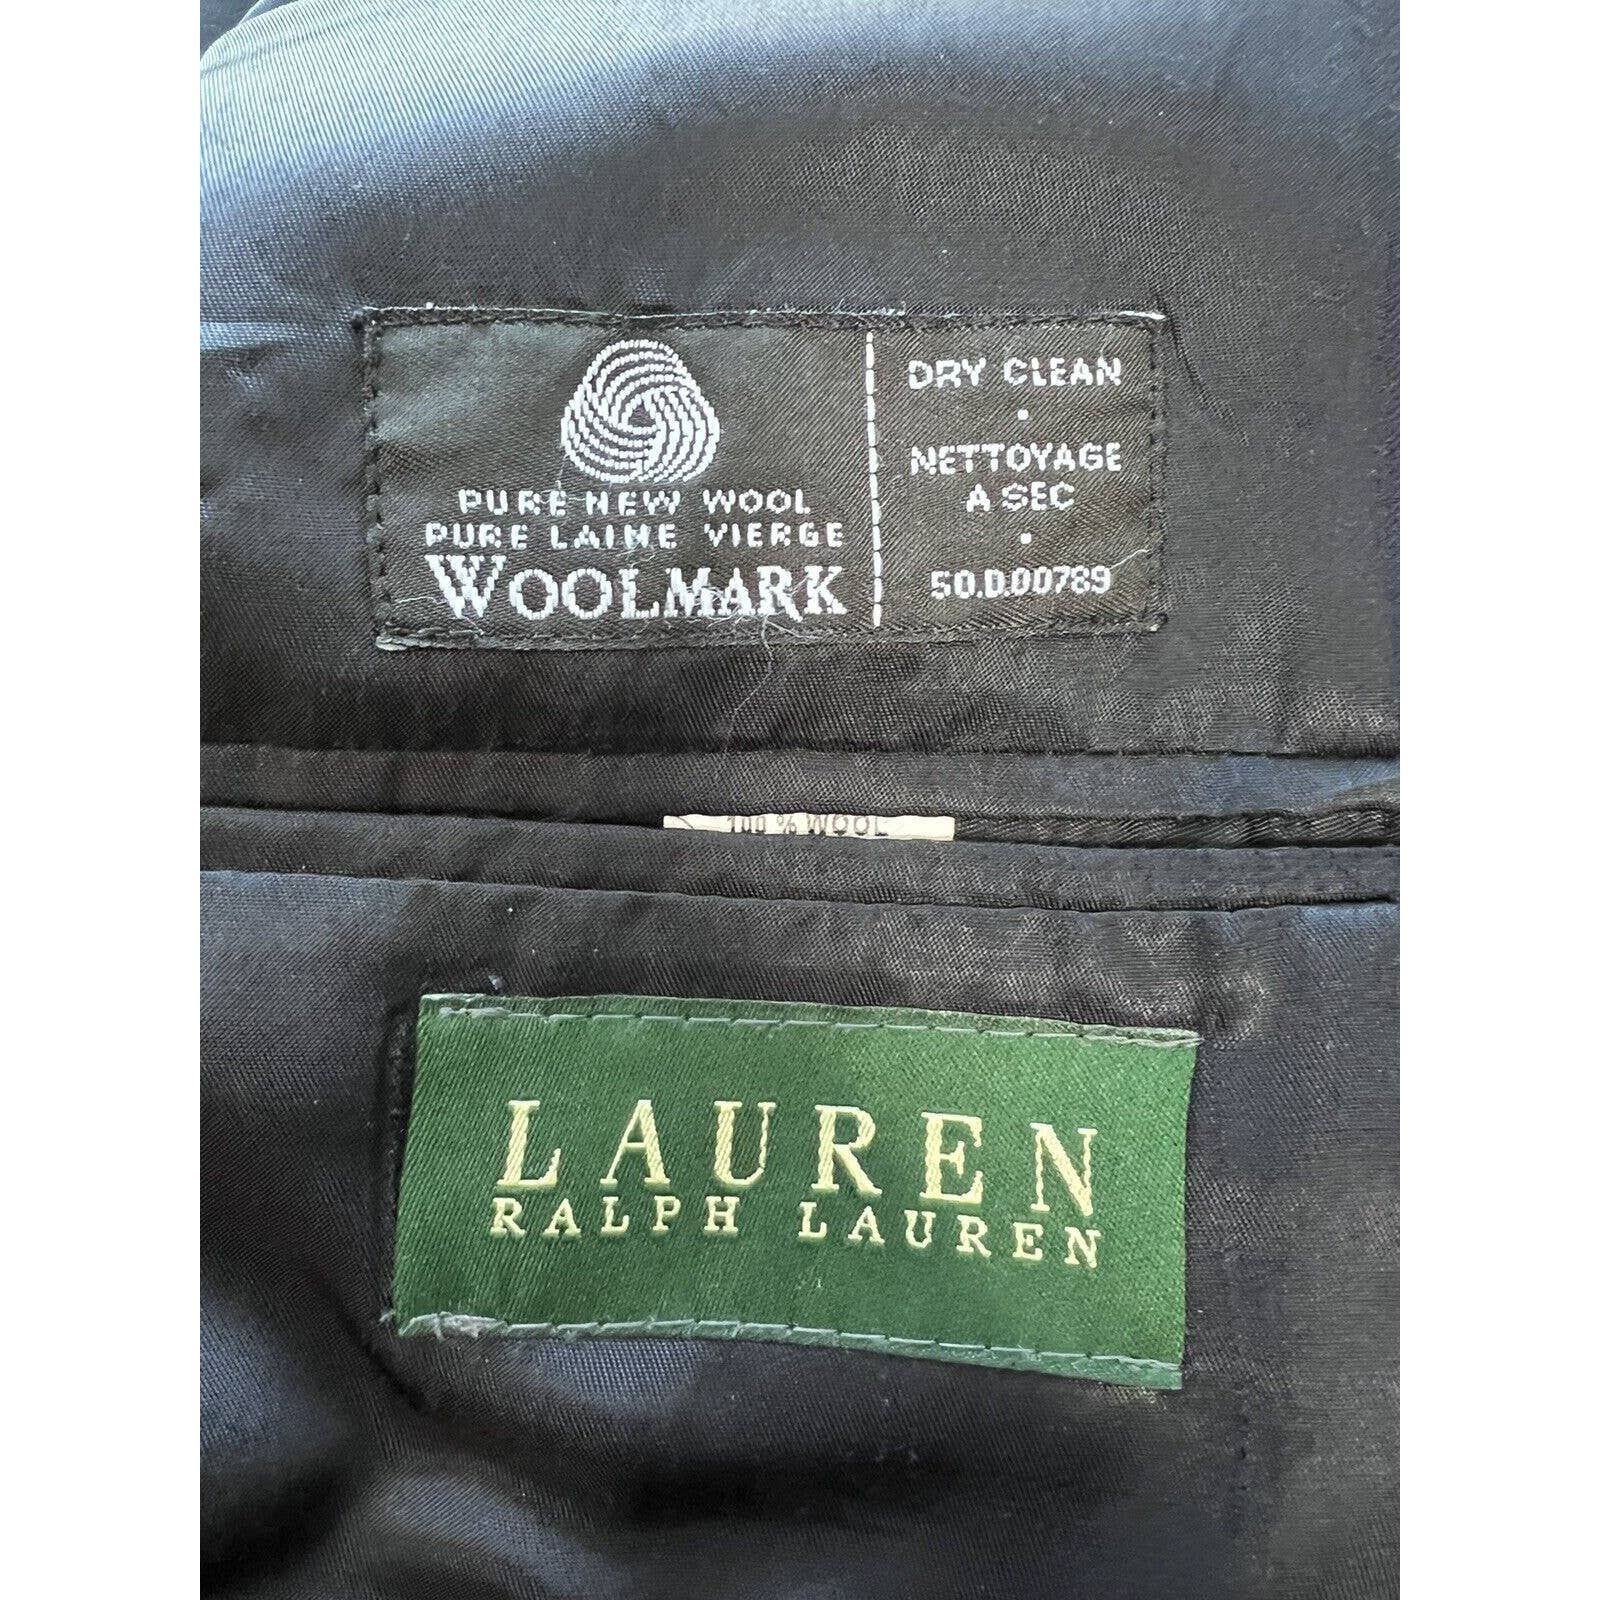 Ralph Lauren 2 Button Sport Coat Men’s 42L Navy Blue And Gold Buttons Wool